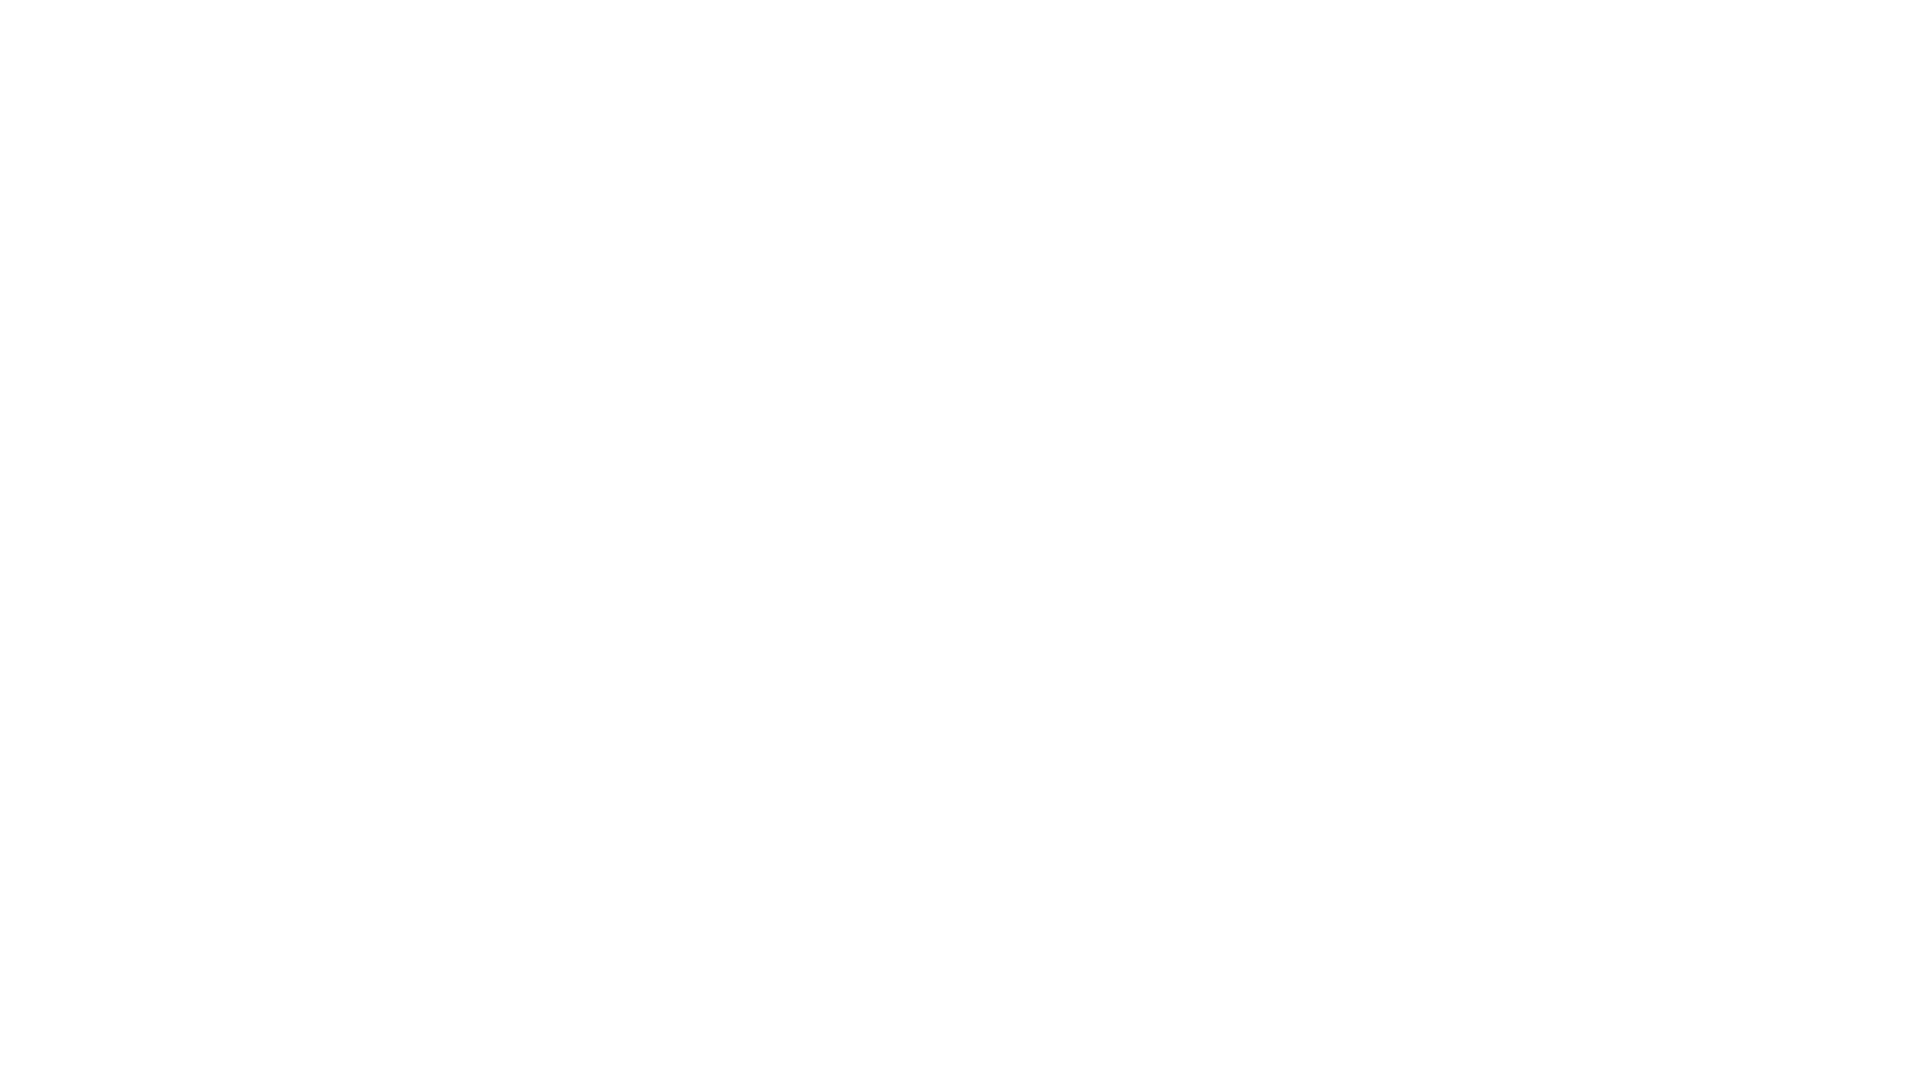 Dados-SEXO-ORAL-(PNG)